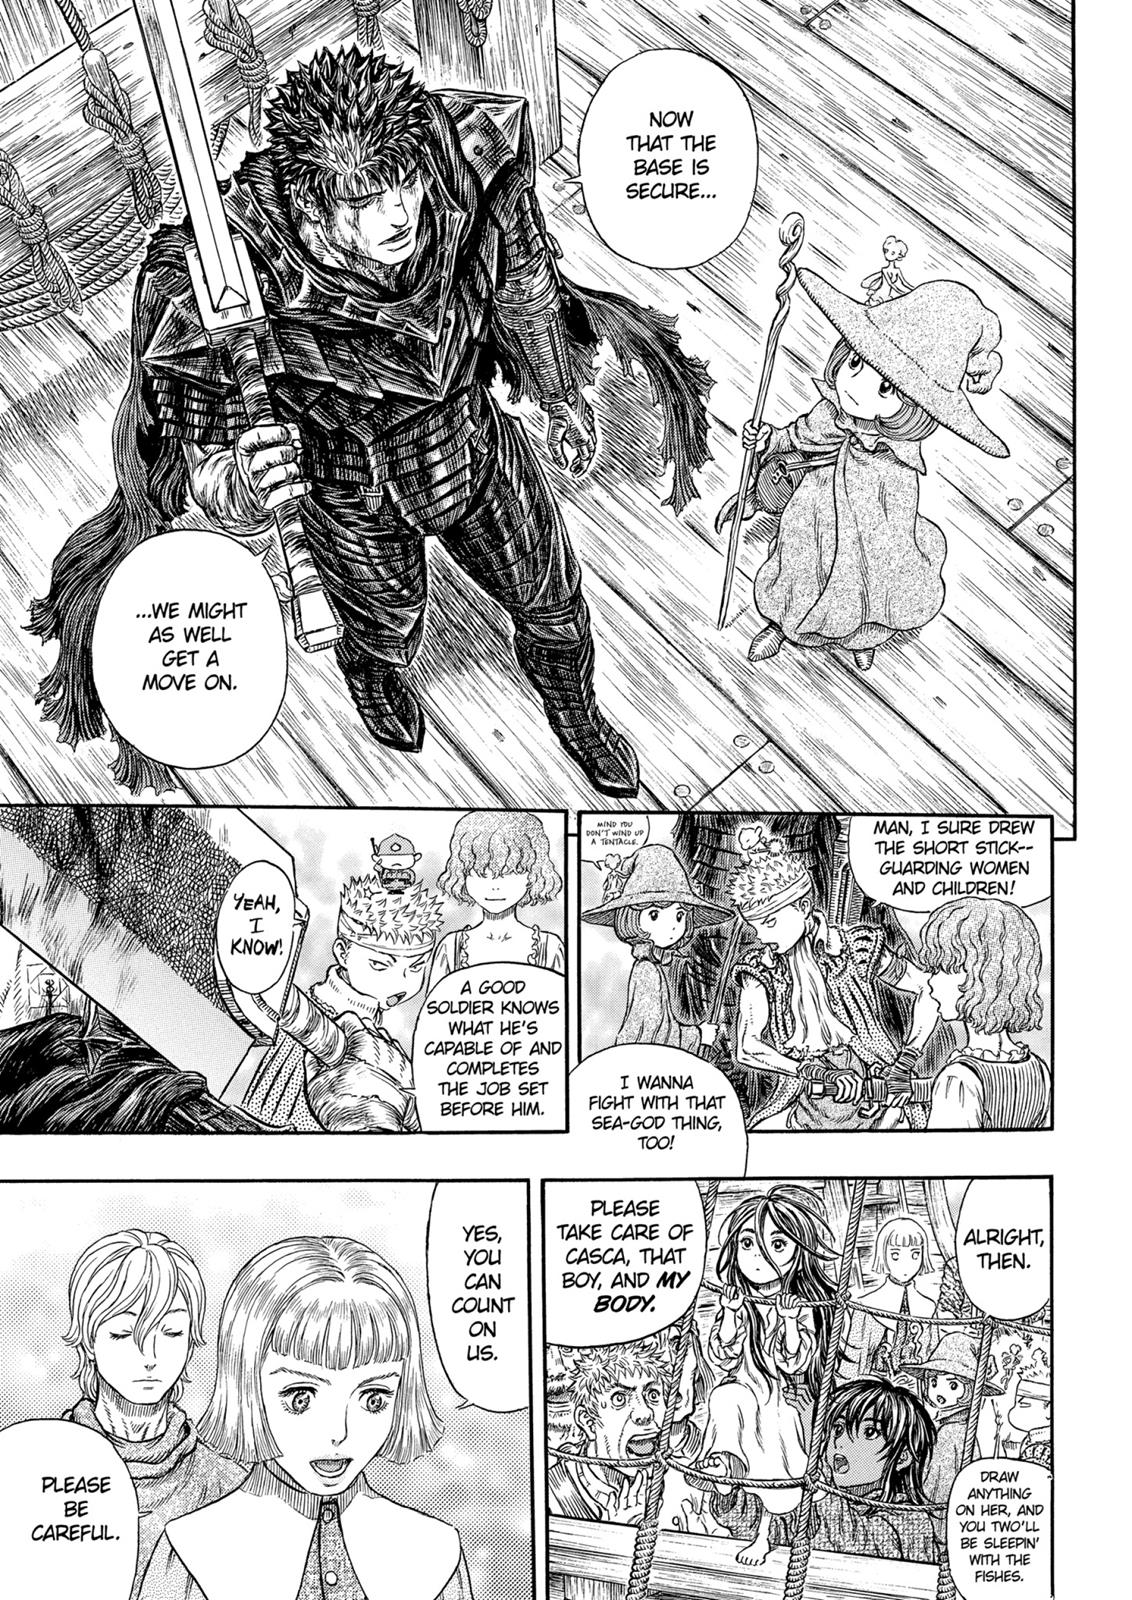 Berserk Manga Chapter 318 image 08